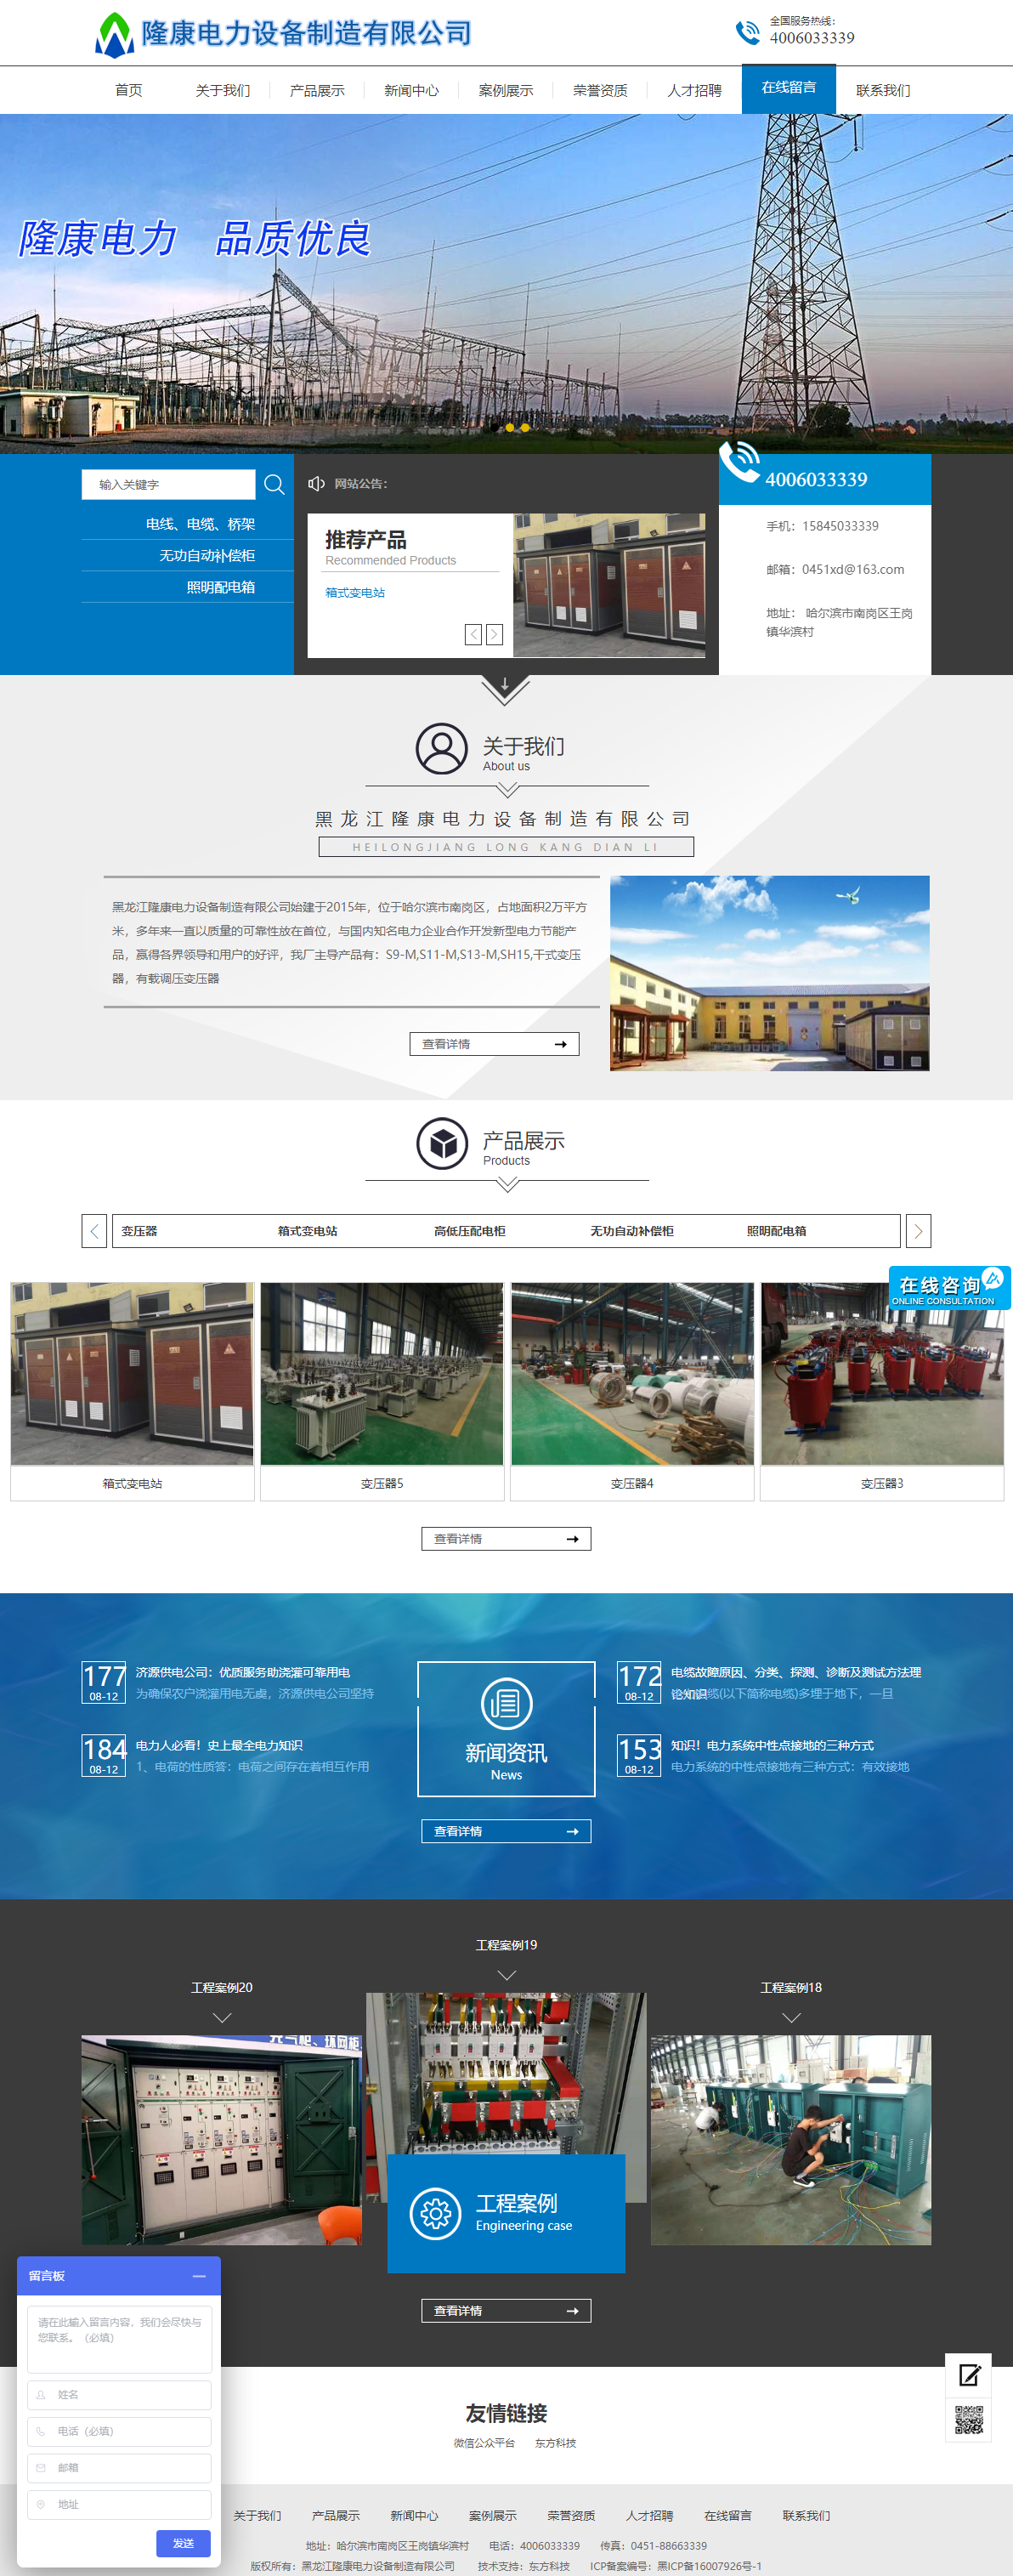 黑龙江隆康电力设备制造有限公司网站案例